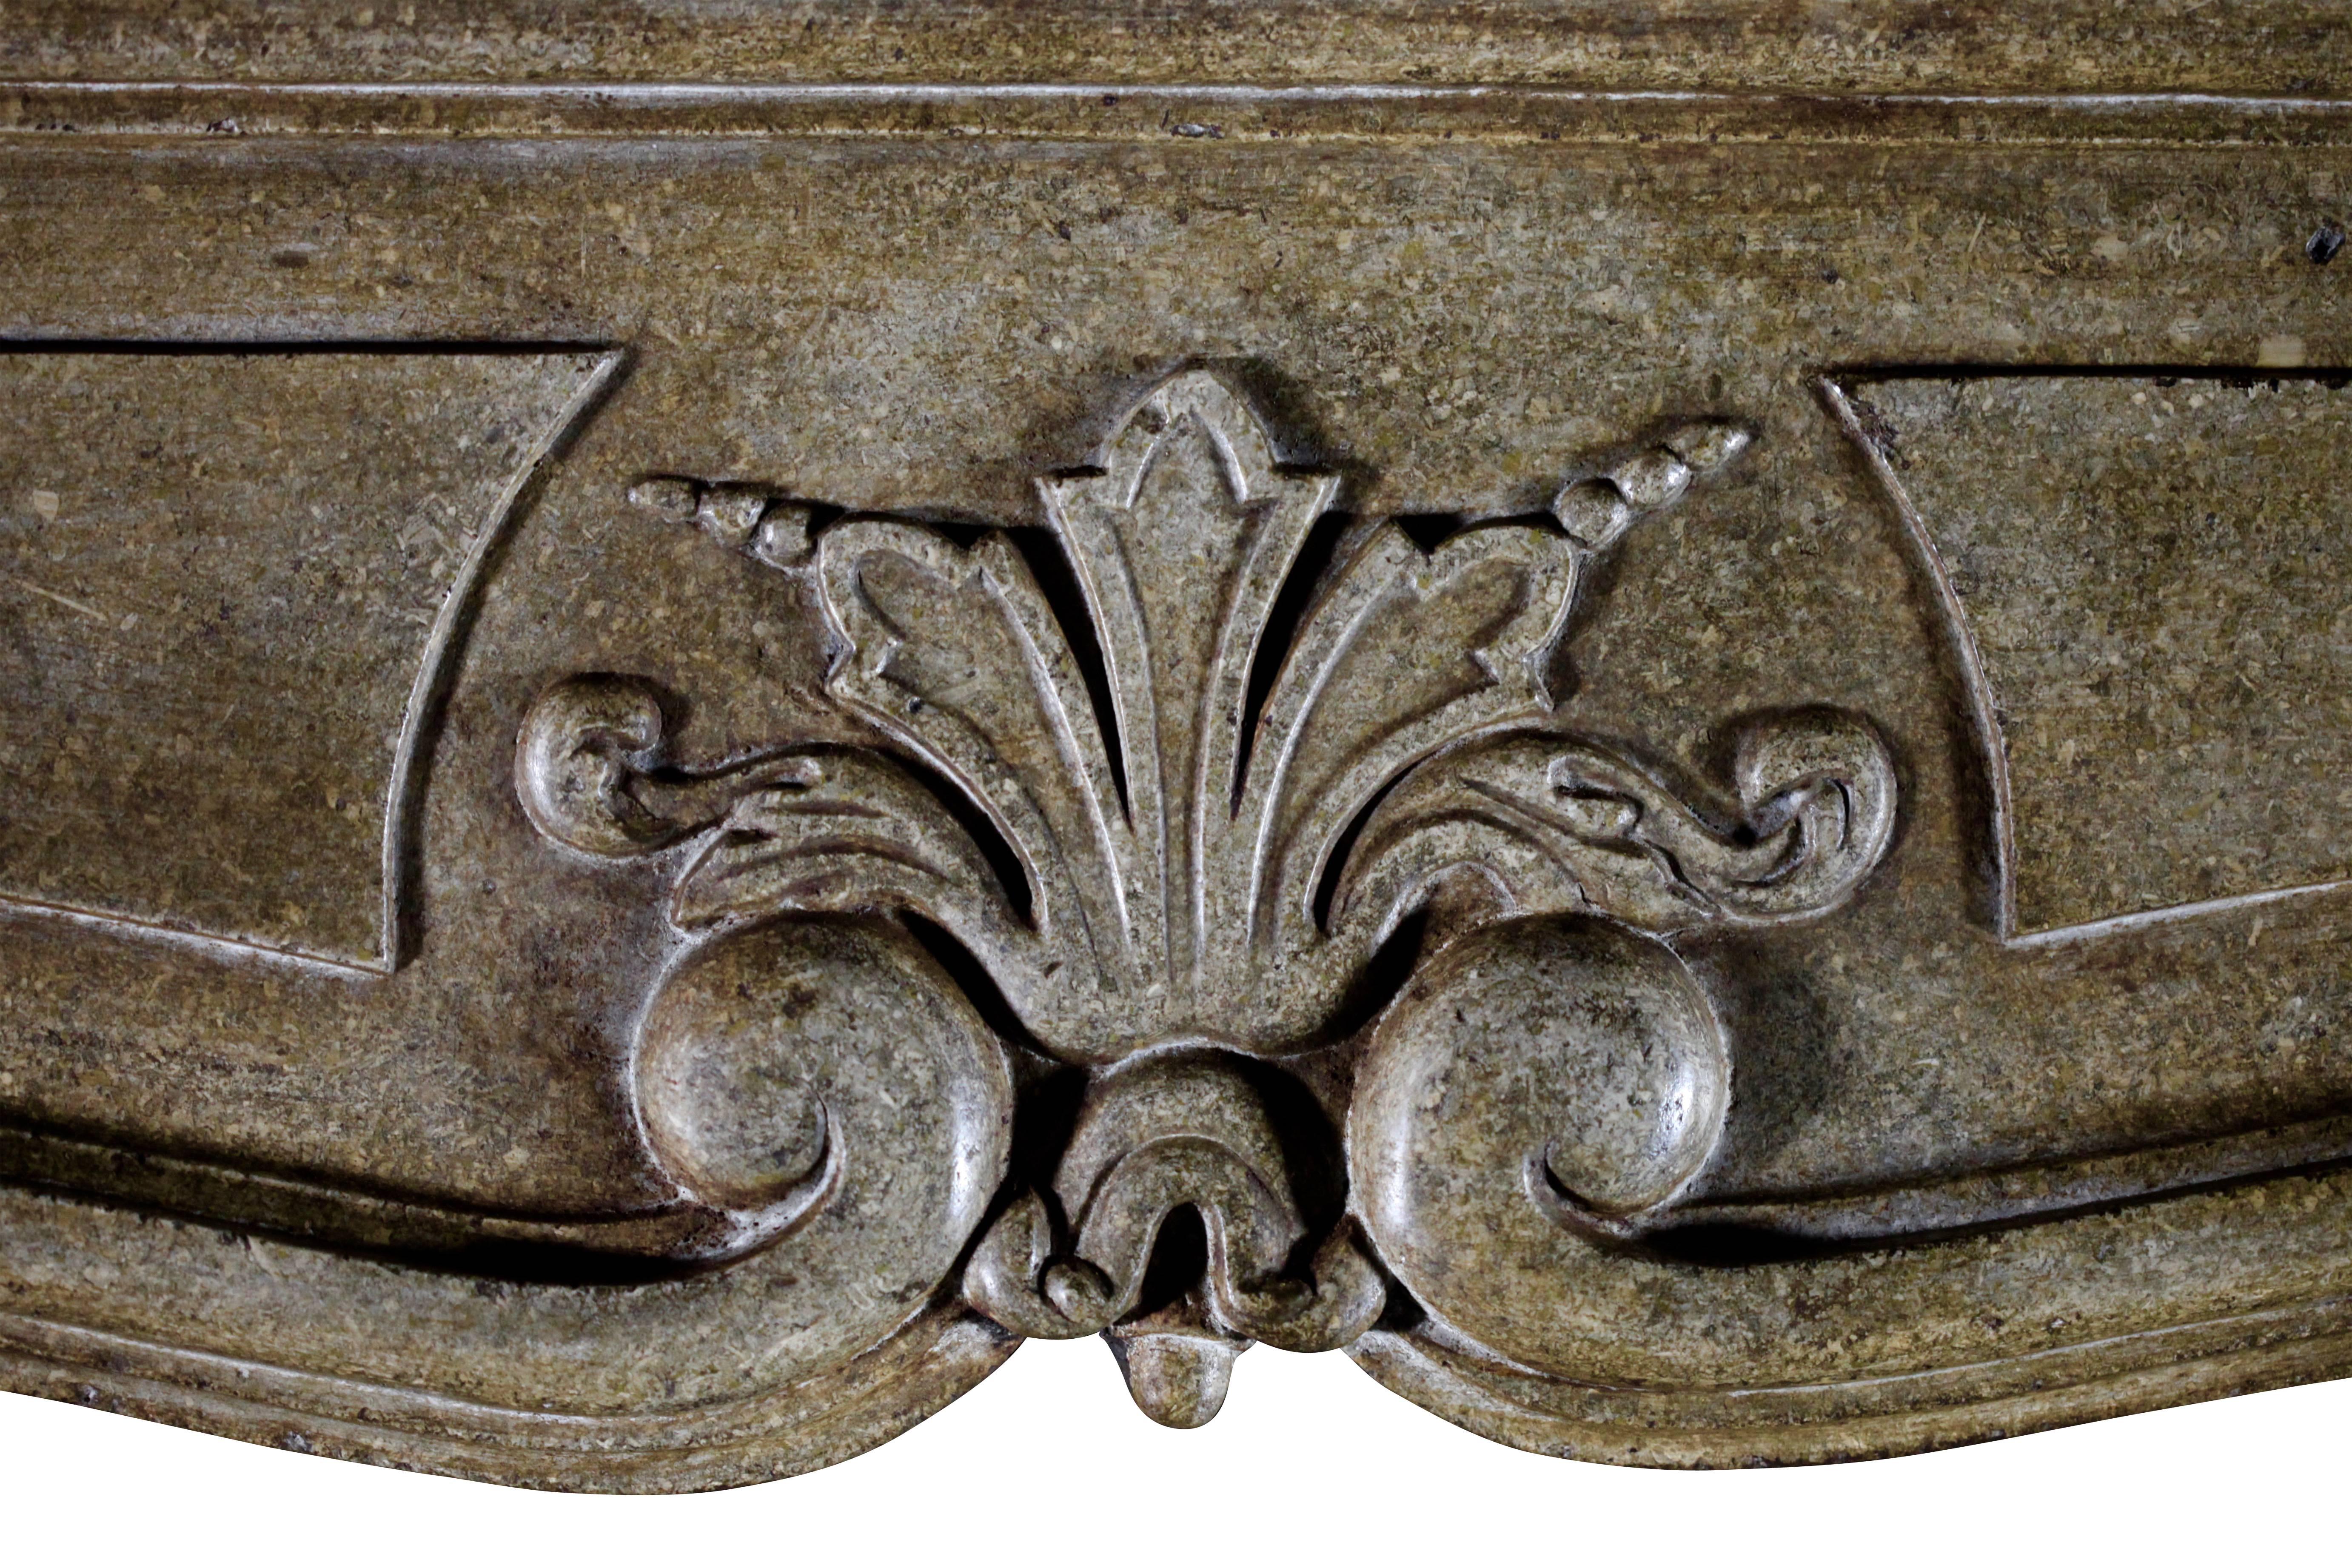 Cheminée en pierre dure de qualité muséale et impressionnante de la fin de la période Louis XIV avec une patine chaude et agréable.
Mesures :
155 cm EW 61.02